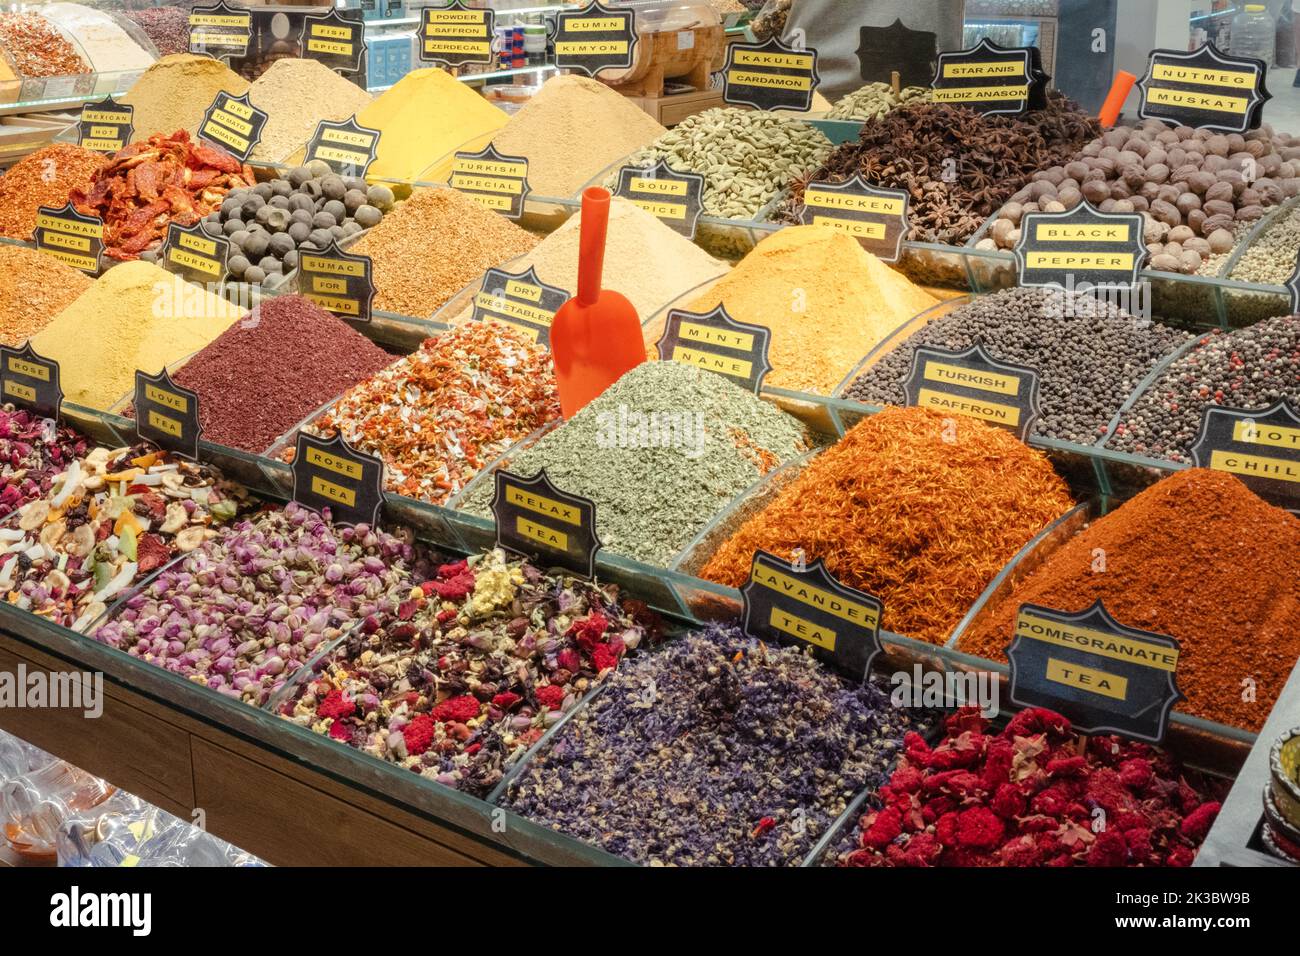 Images de nourriture colorée du bazar de Mısır, épices traditionnelles à Istanbul, shopping dans un bazar turc, produits à base de plantes dans des stands de marché d'arcade Banque D'Images